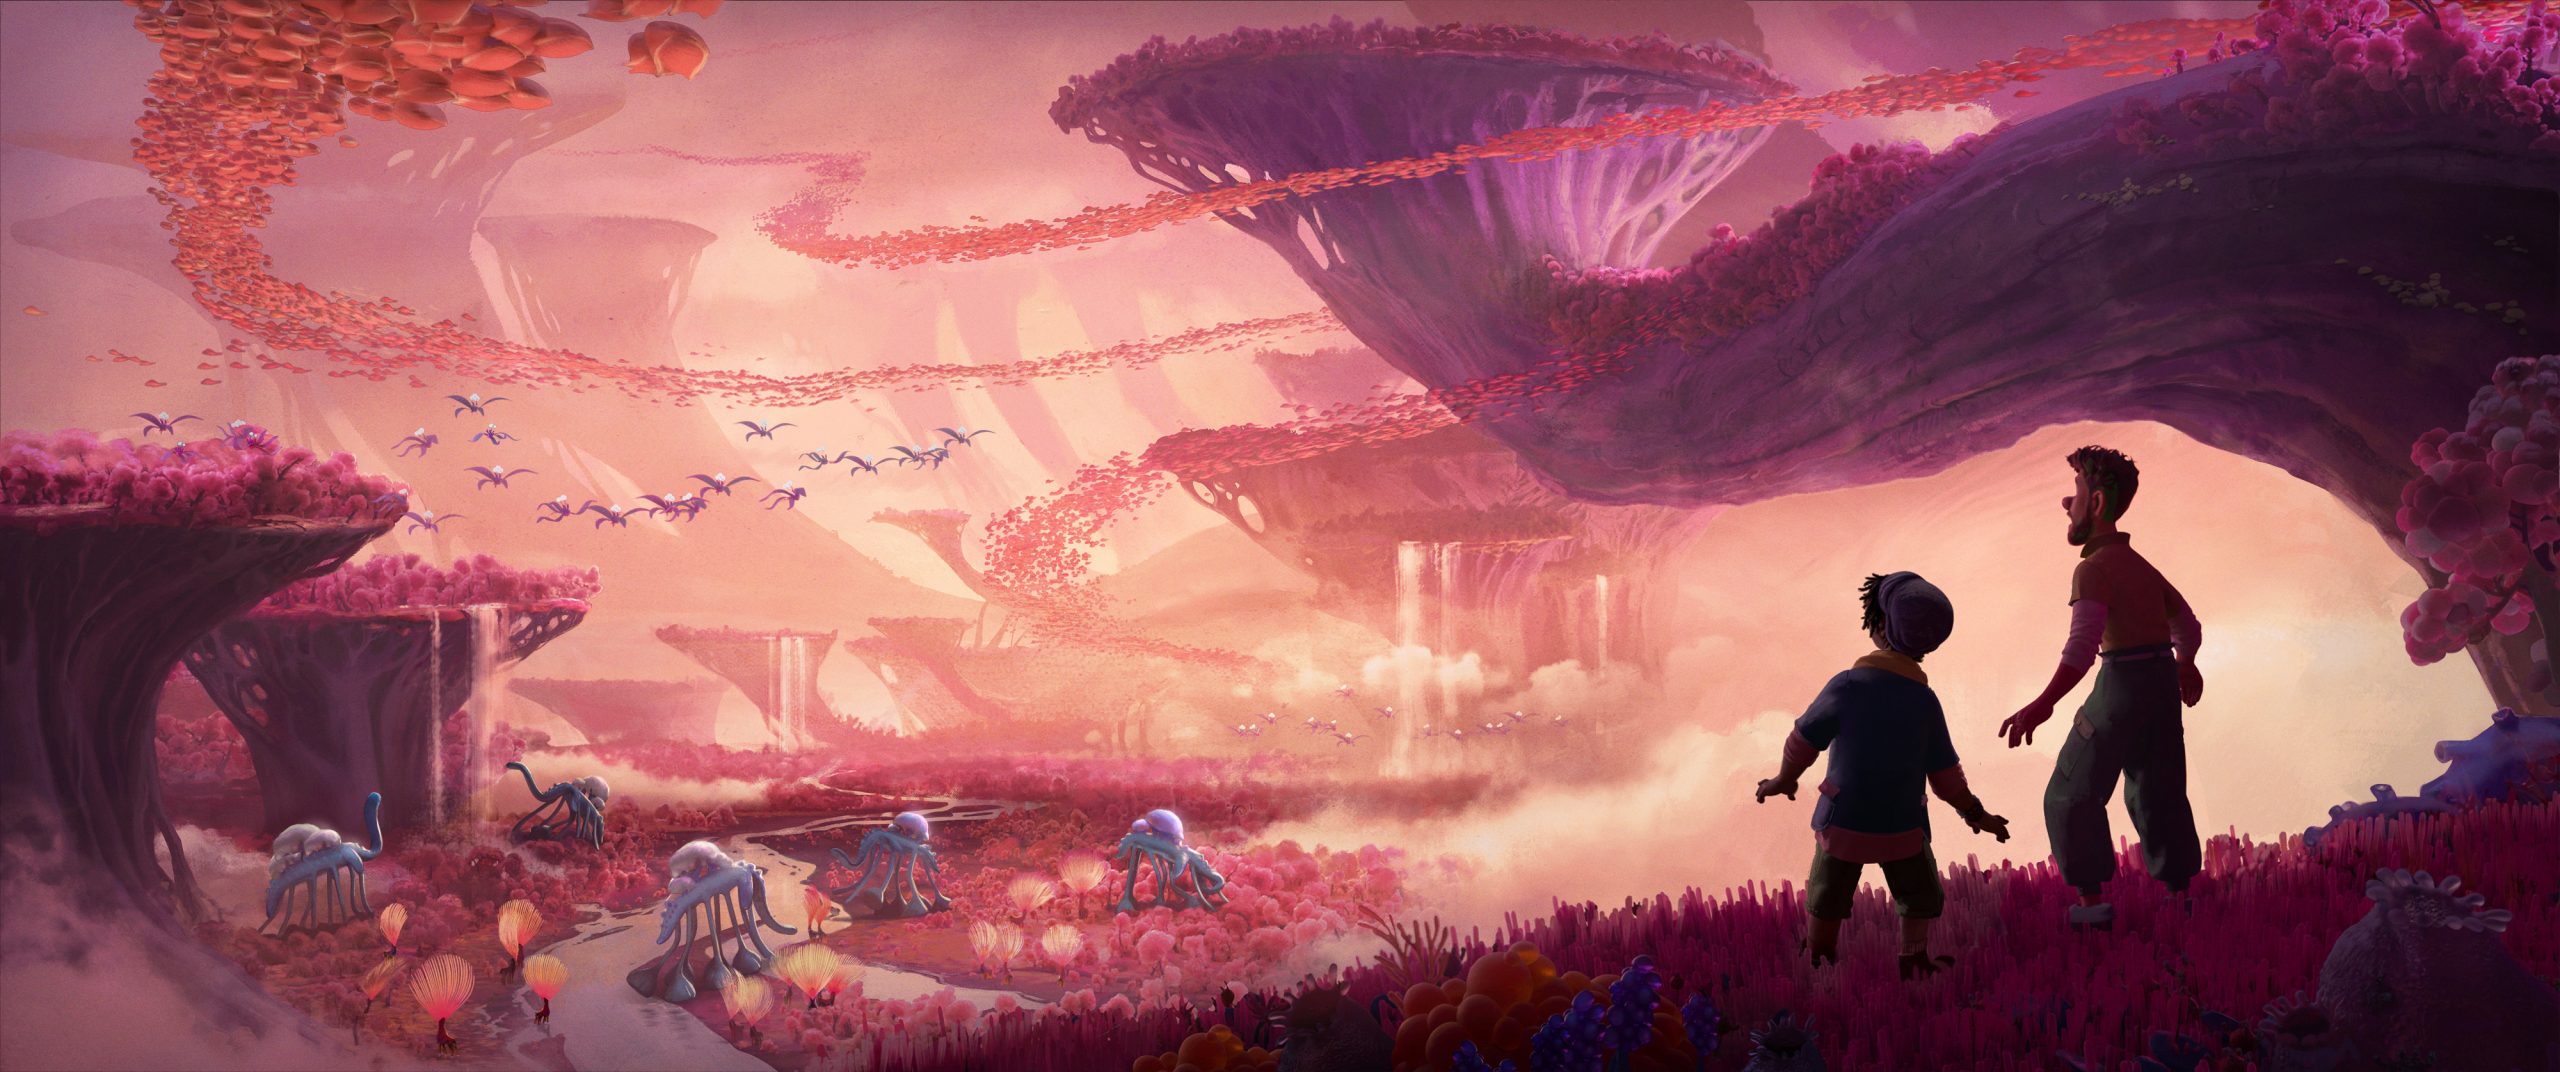 Mundo Estranho, novo filme da Walt Disney Animation Studios.